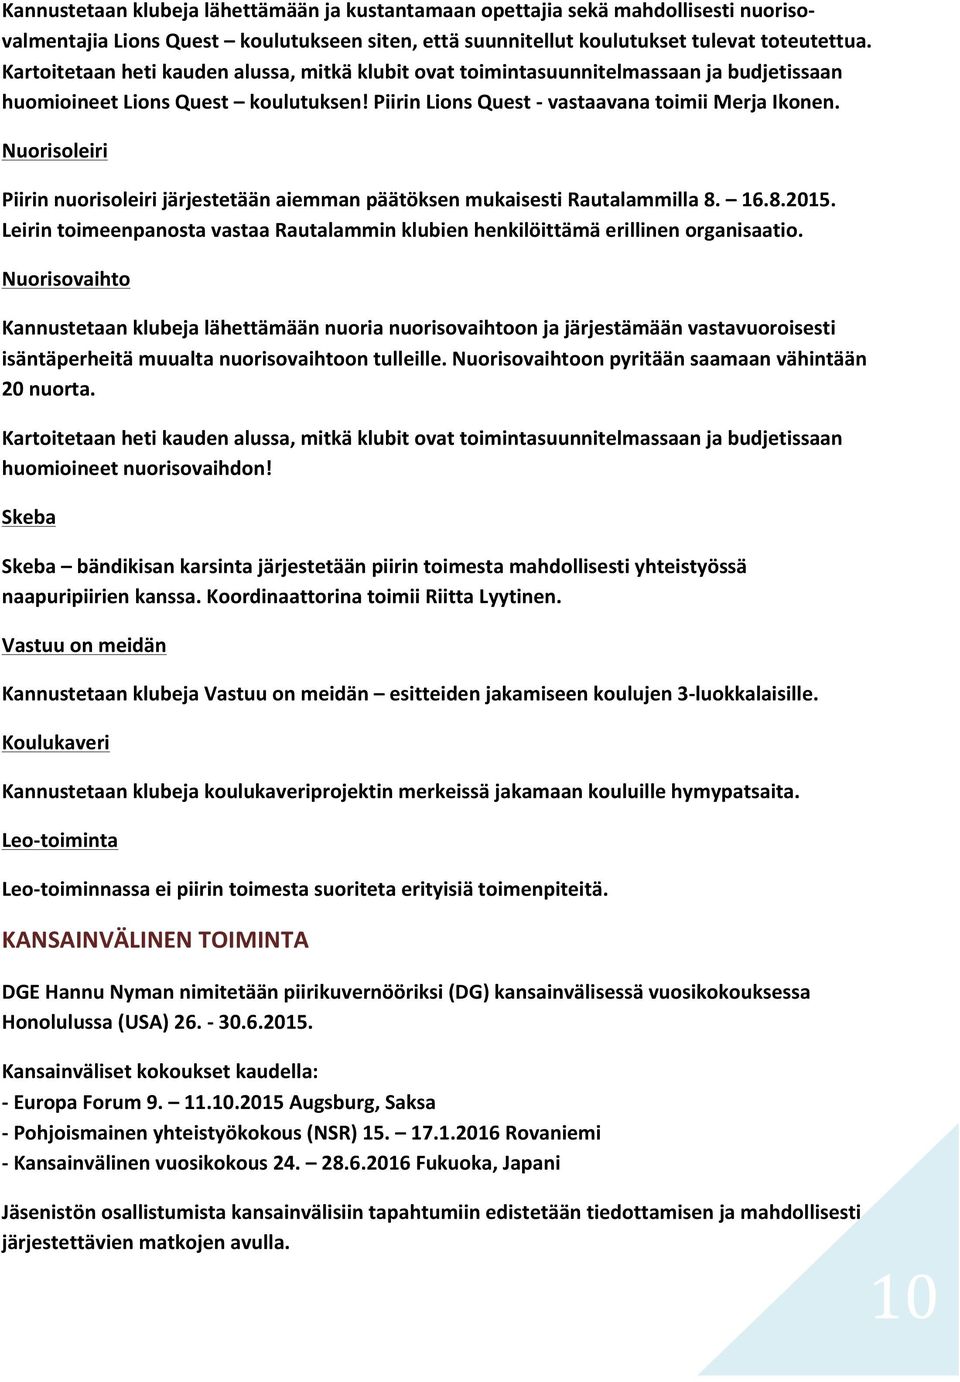 Nuorisoleiri Piirin nuorisoleiri järjestetään aiemman päätöksen mukaisesti Rautalammilla 8. 16.8.2015. Leirin toimeenpanosta vastaa Rautalammin klubien henkilöittämä erillinen organisaatio.